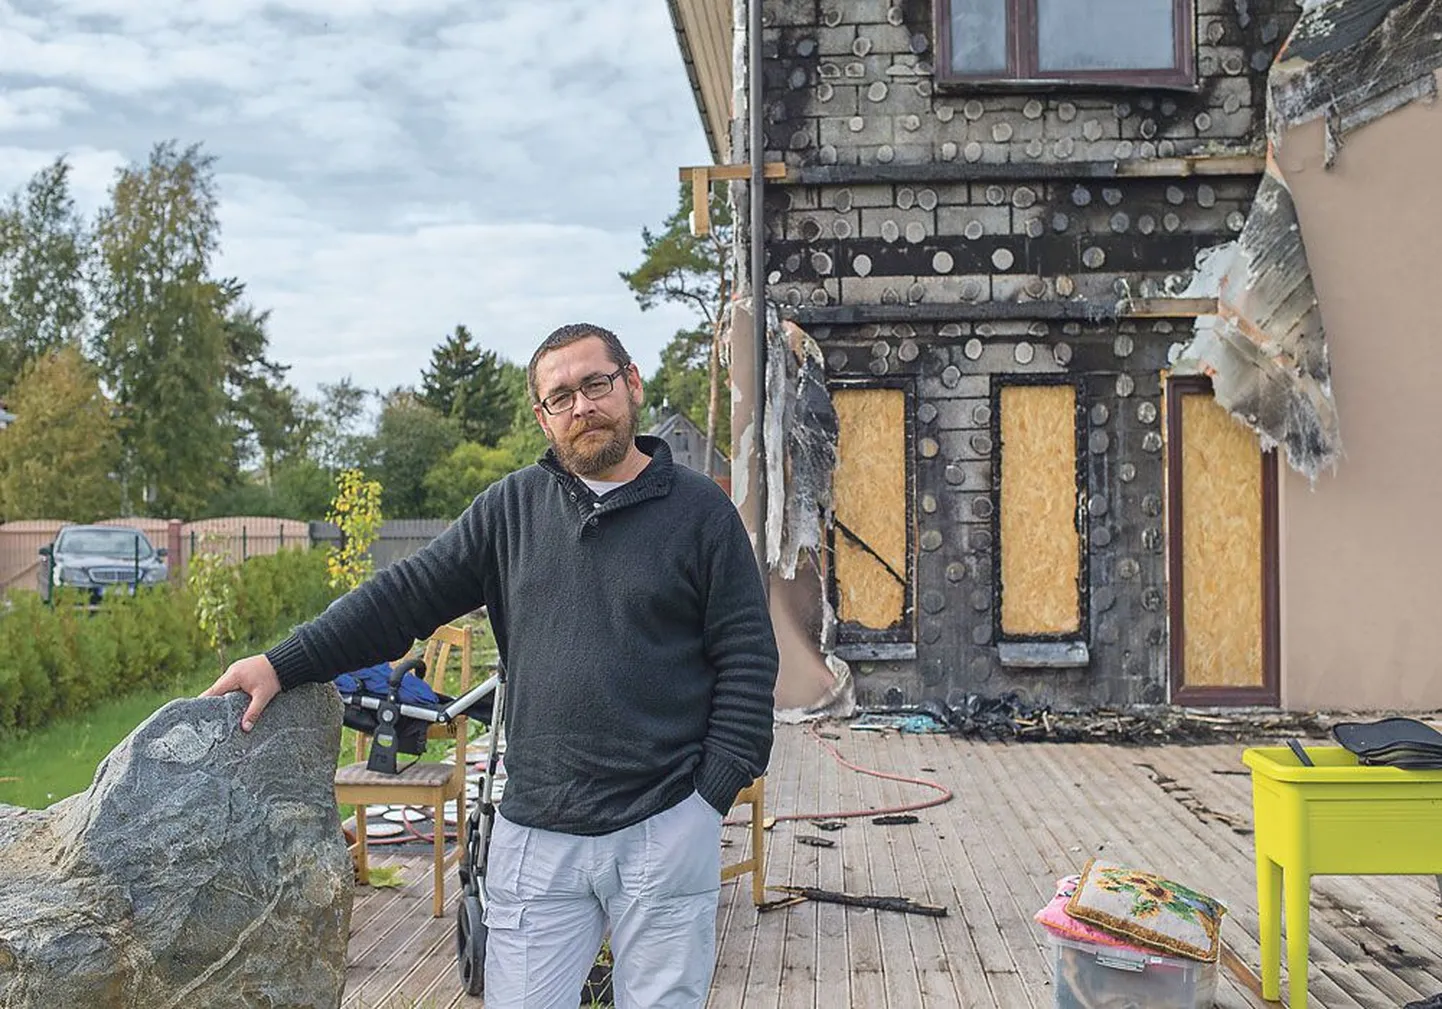 Олег Ержанов решил рассказать о поджоге своего дома, поскольку опасается, что человек, которого он подозревает, может нанести вред еще кому-то.